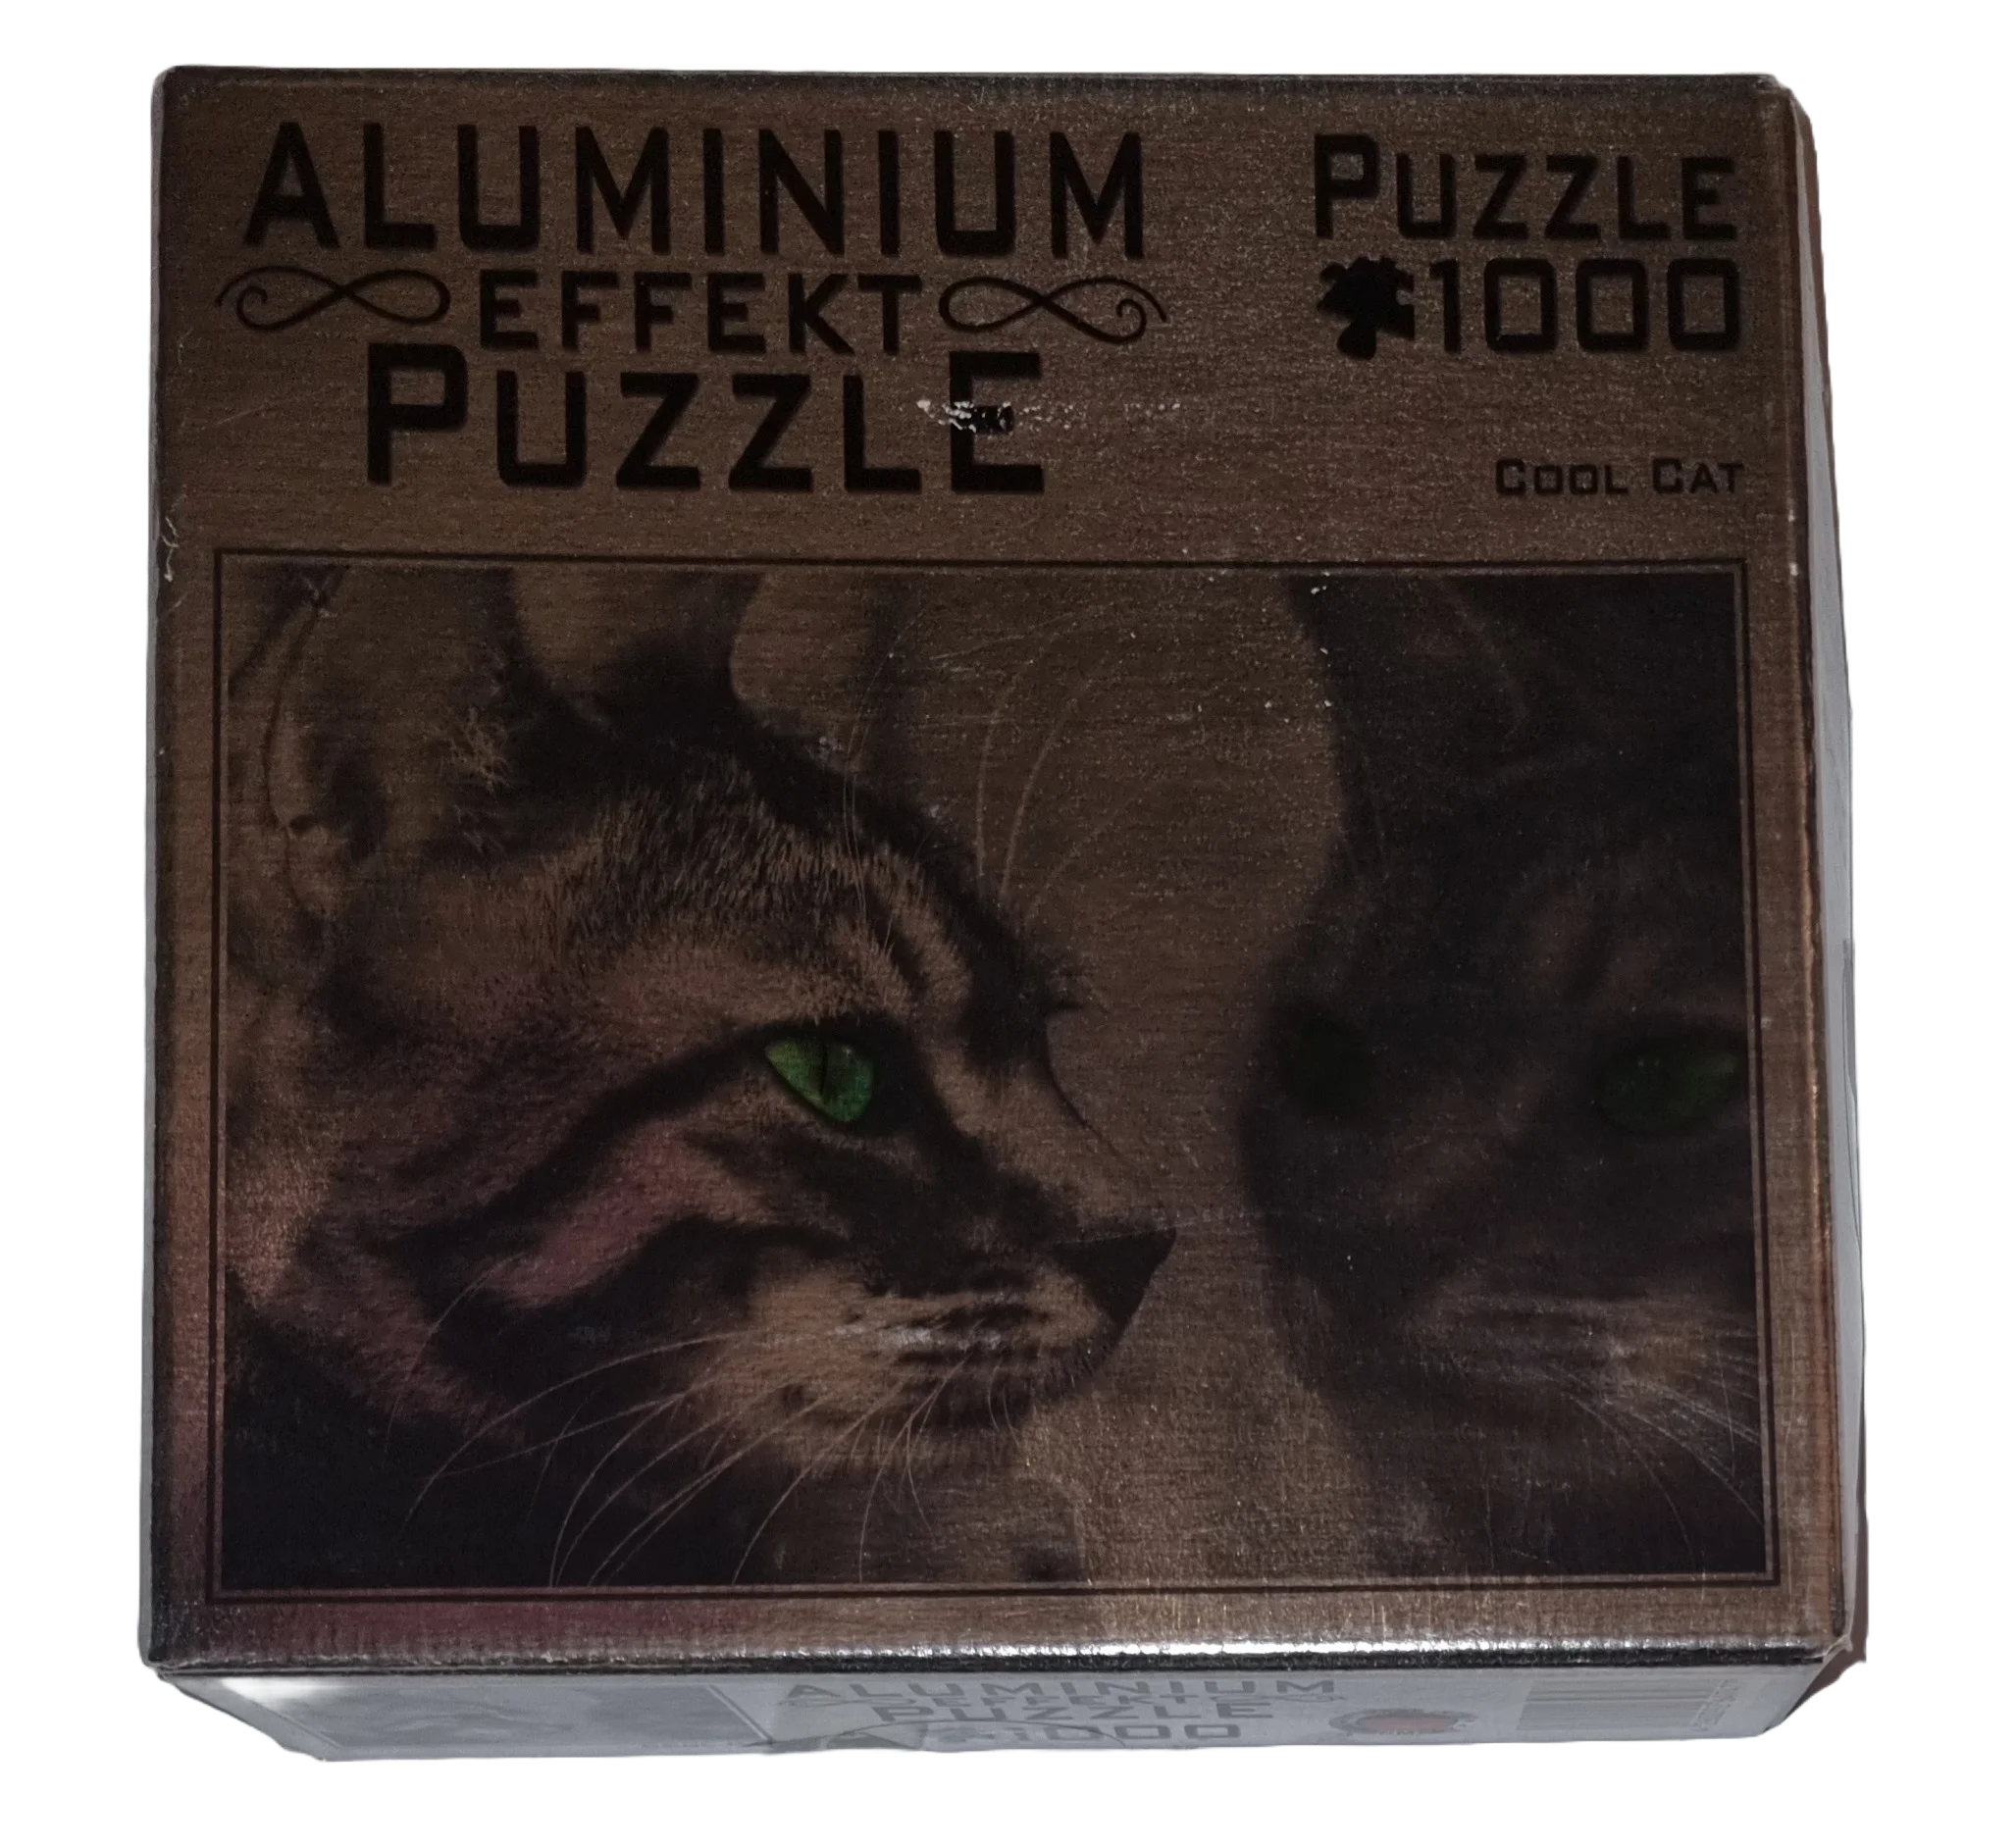 MIC Aluminium Effekt Puzzle 1000 Teile Cool Cat 747.7